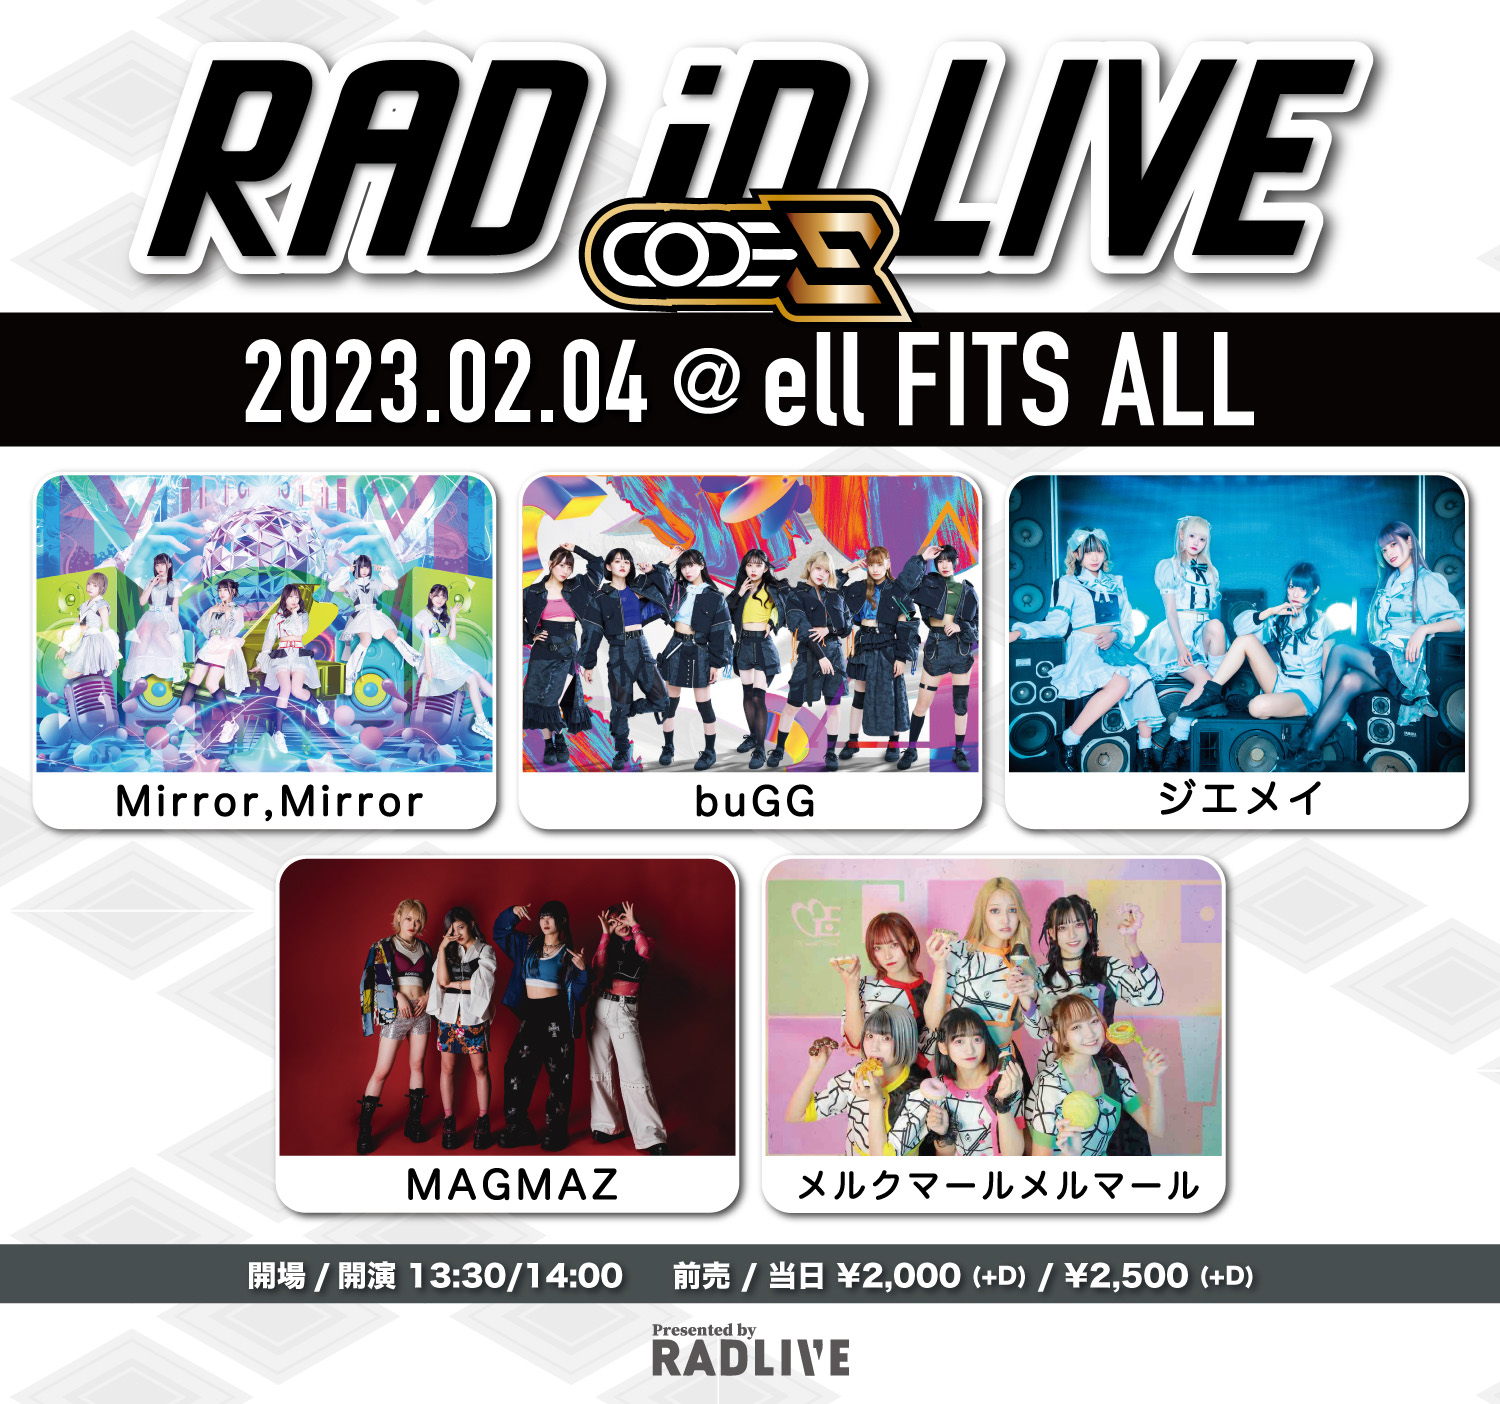 【2/4 ell FITS ALL(昼)】RAD iD LIVE-code E-